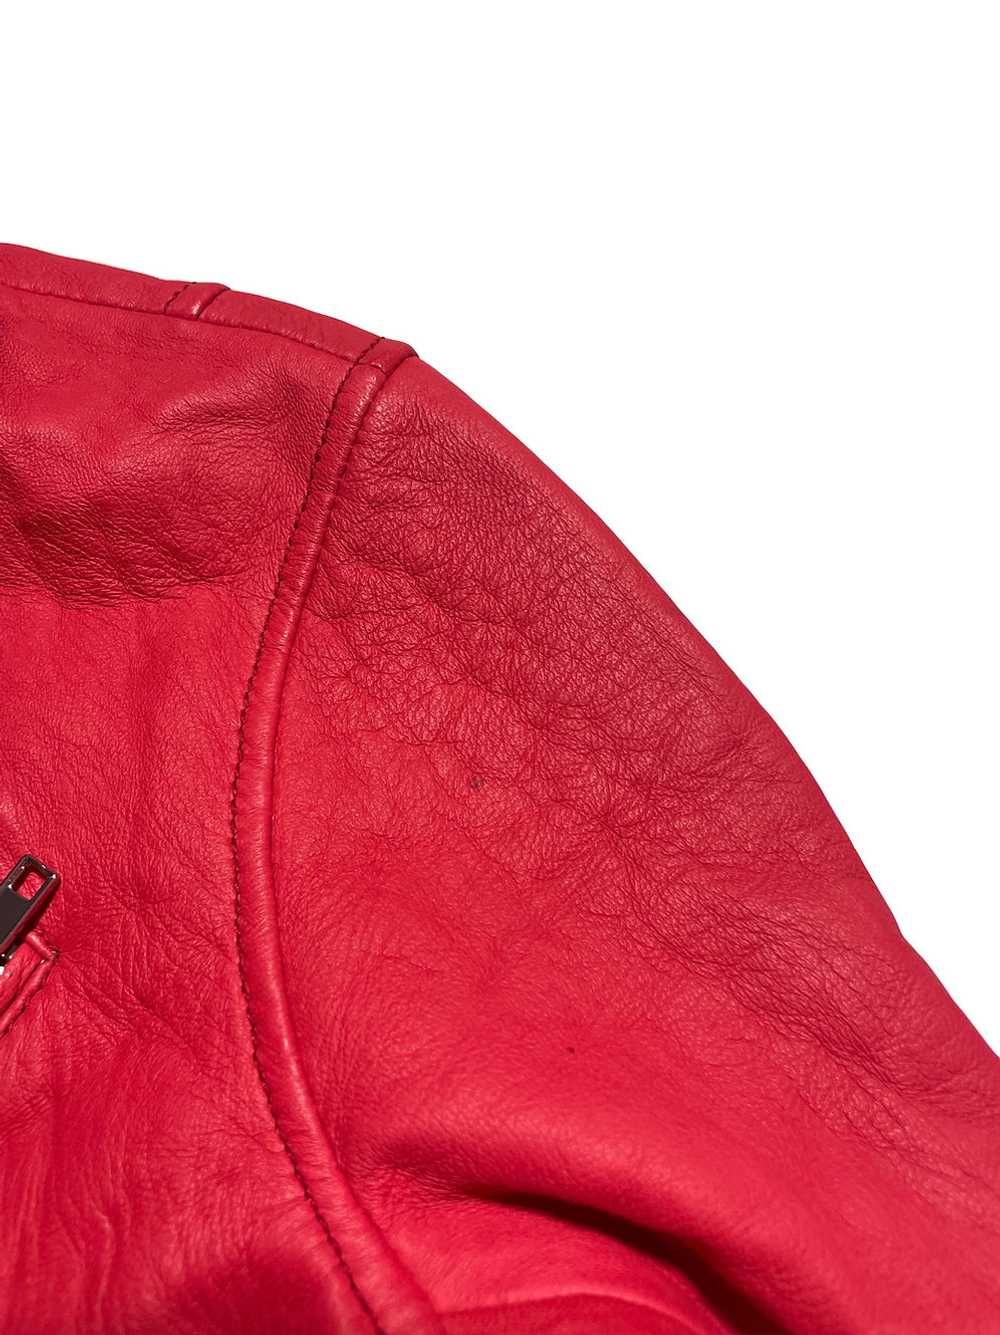 Maje Bright Red Leather Jacket UK 12 - image 5